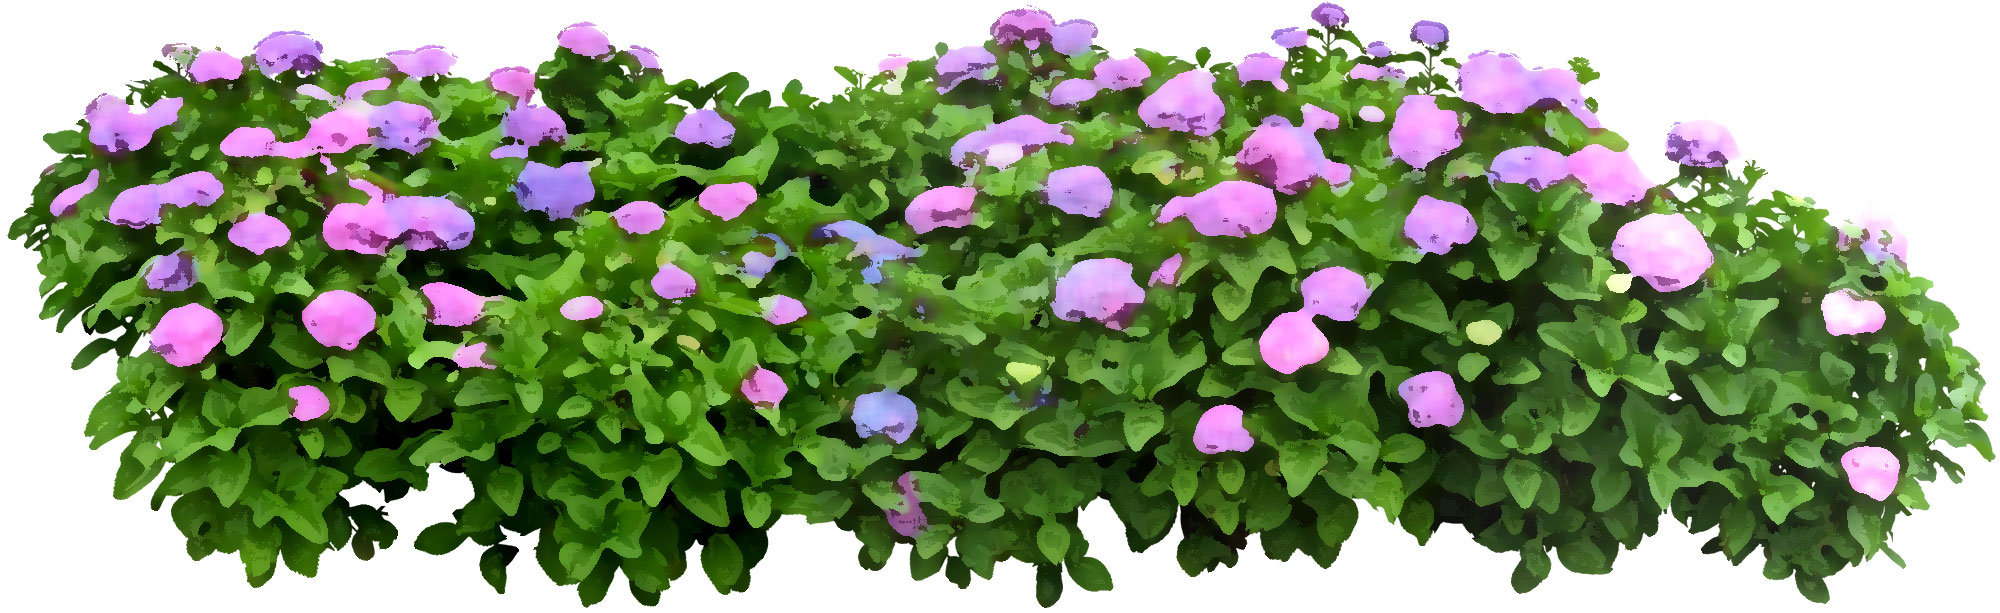 花のライン線イラスト-あじさい・青紫・緑葉